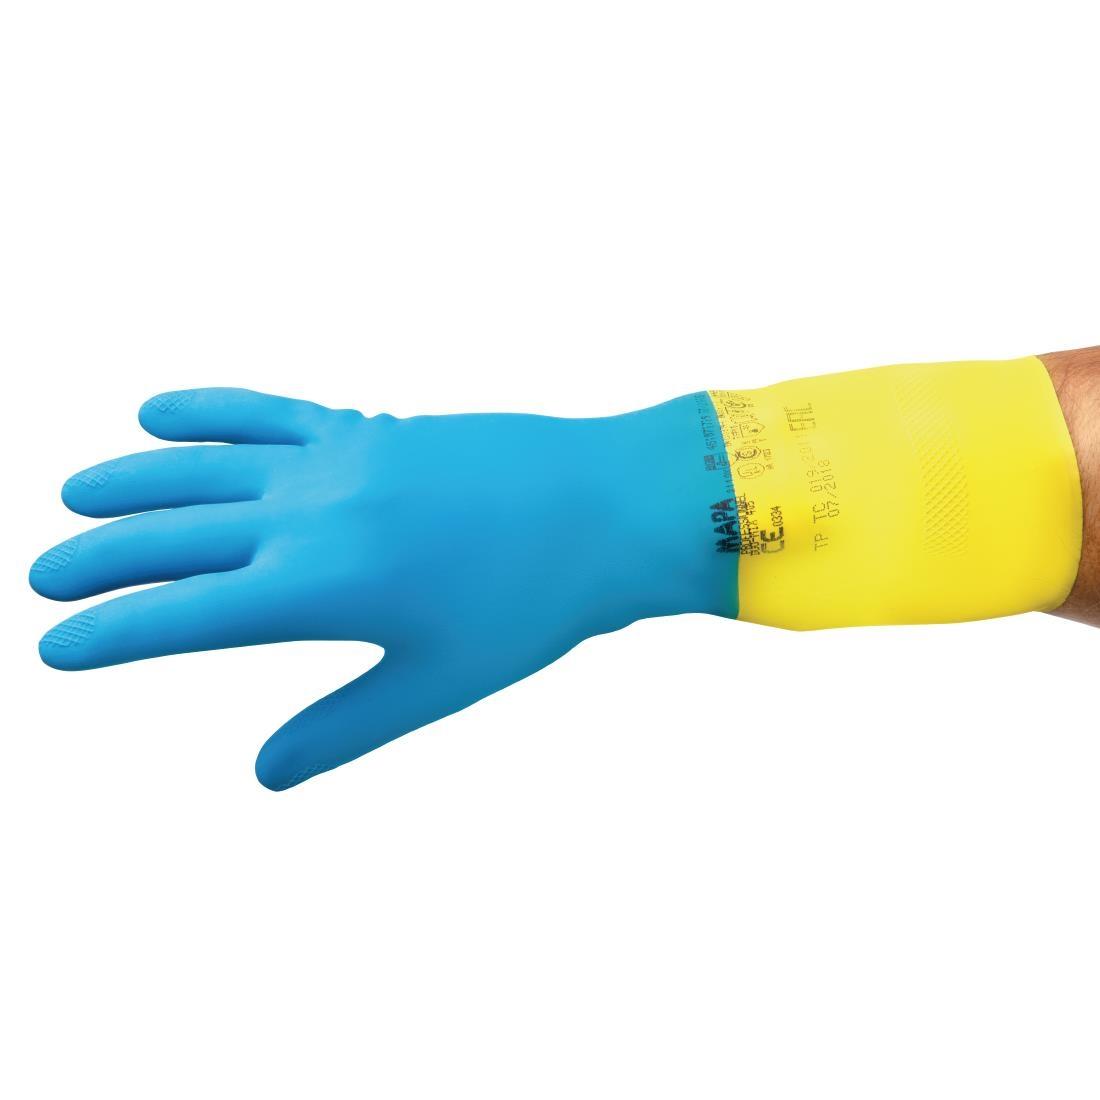 MAPA Alto 405 Liquid-Proof Heavy-Duty Janitorial Gloves Blue and Yellow Medium - FA296-M  - 7